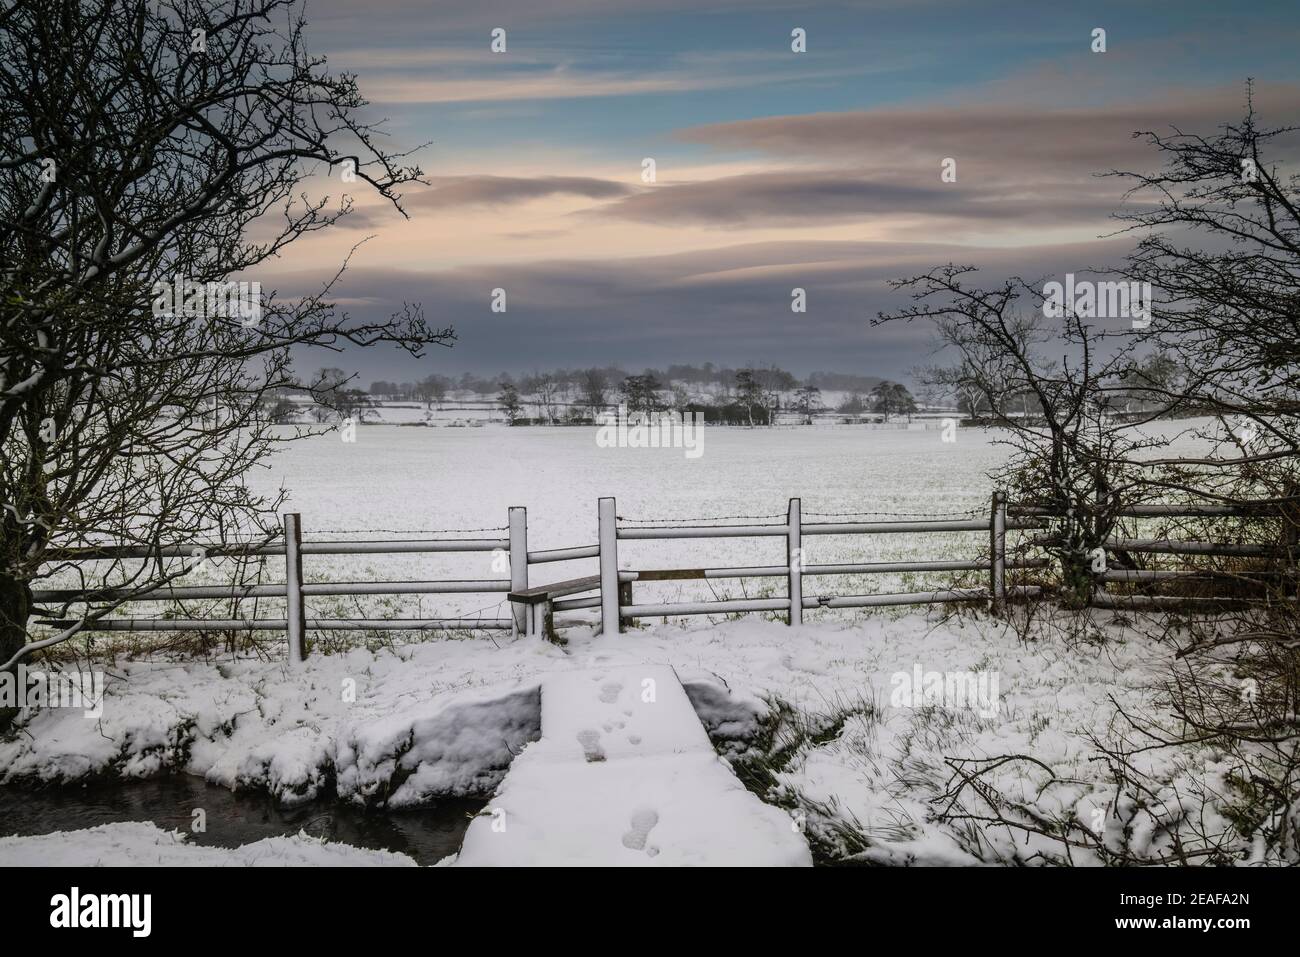 Stile in condizioni di inverno, Clitheroe, Ribble Valley, Lancashire, Regno Unito. Foto Stock